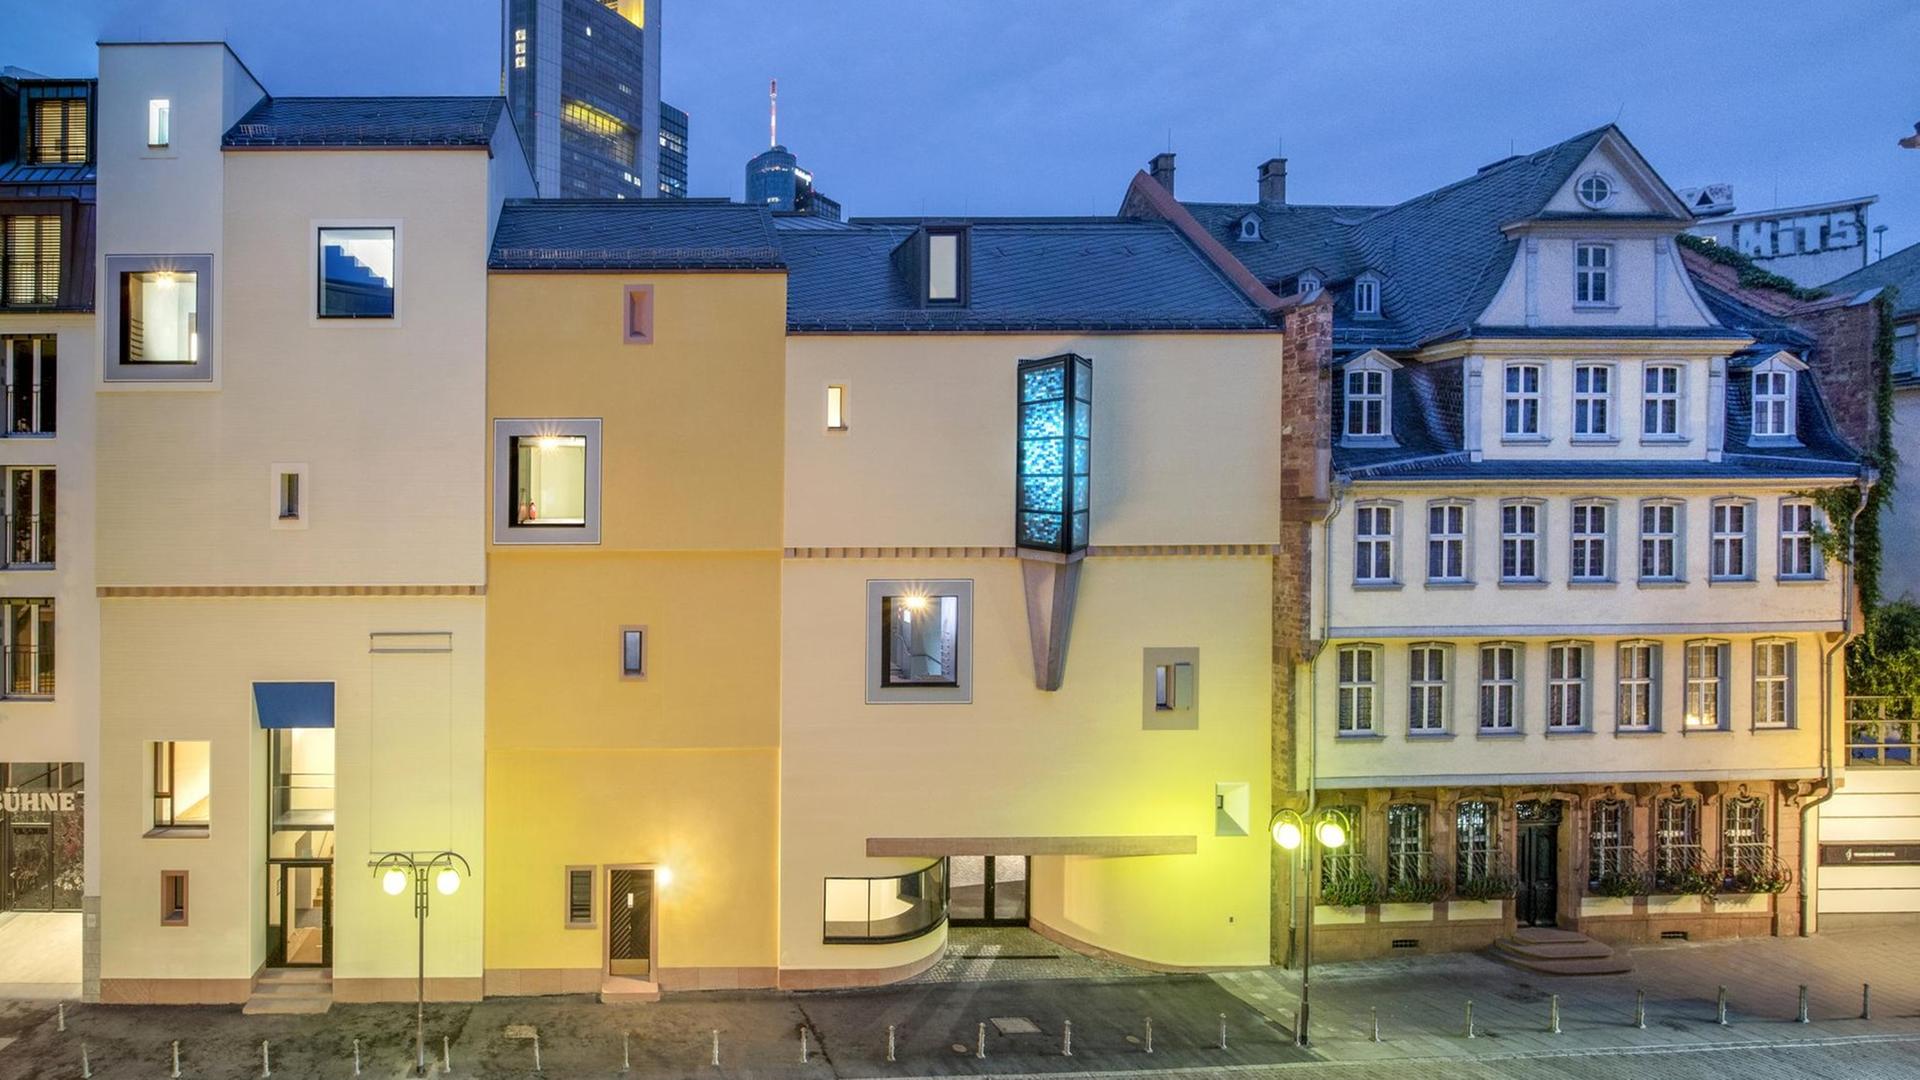 Das Deutsche Romantik-Museum in Frankfurt am Main und rechts daneben das Goethe-Haus in abendlicher Beleuchtung.